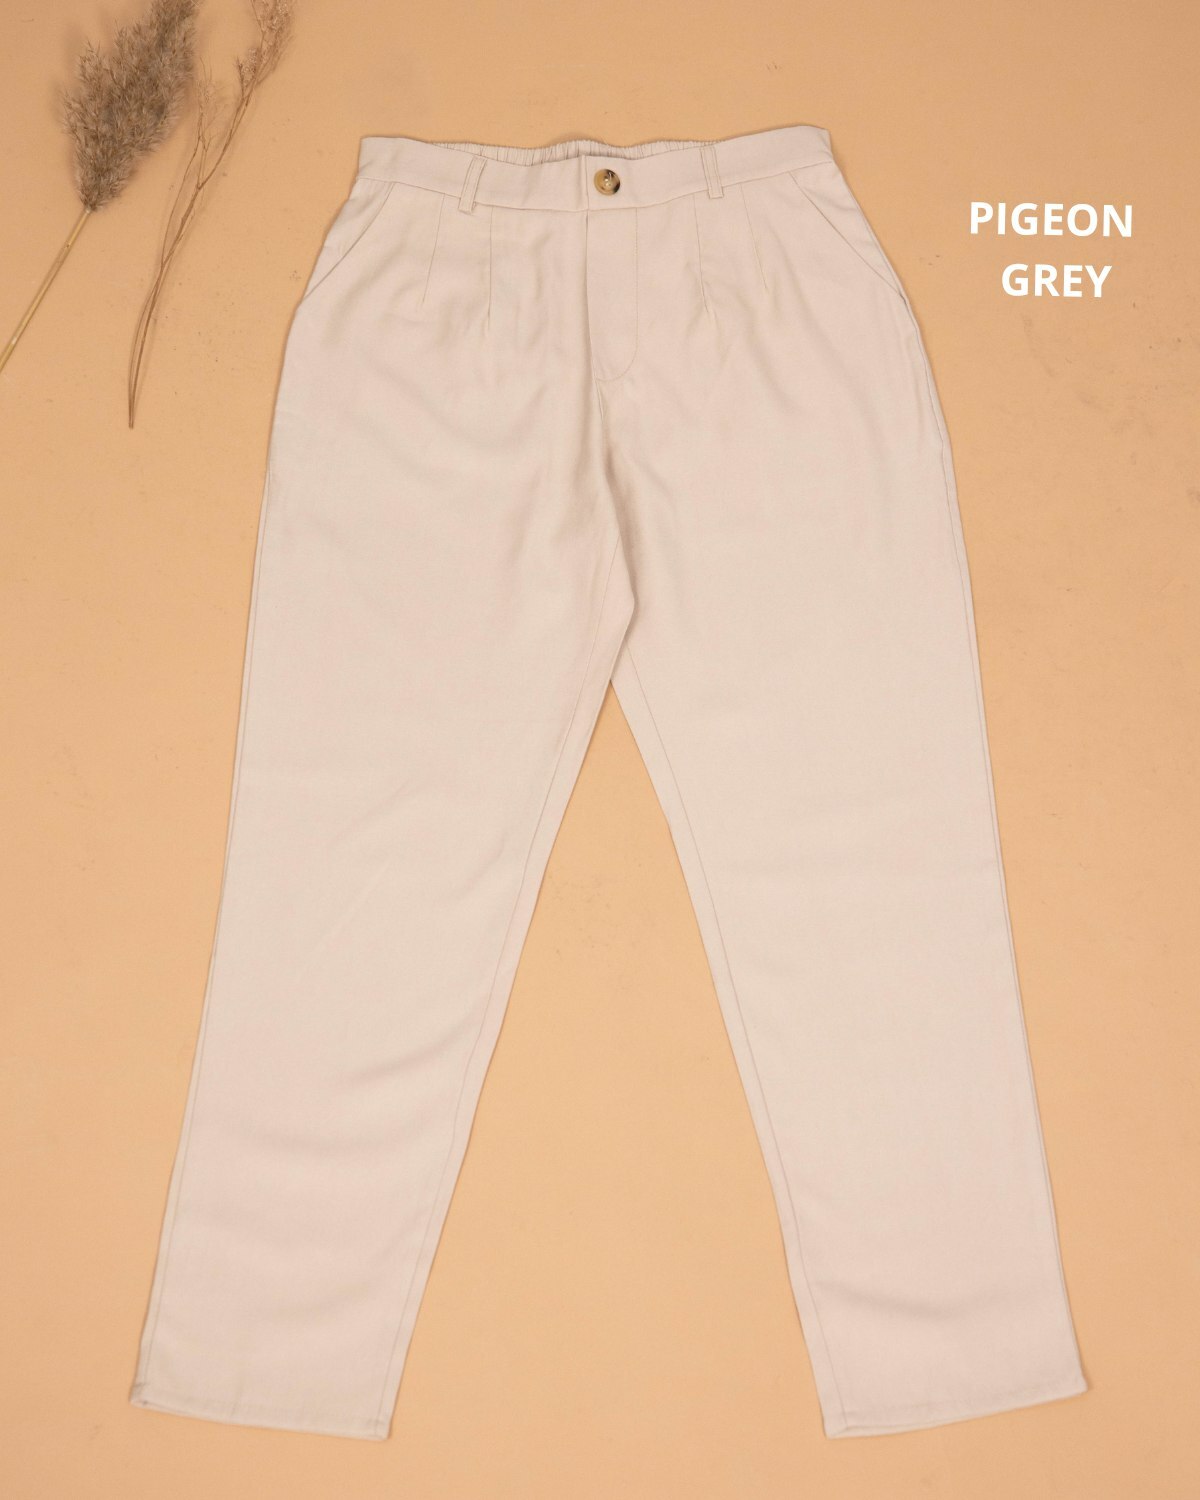 haura-wear-neeta-slim-straight-cotton-long-pants-seluar-muslimah-seluar-perempuan-palazzo-pants-sluar (15).jpg